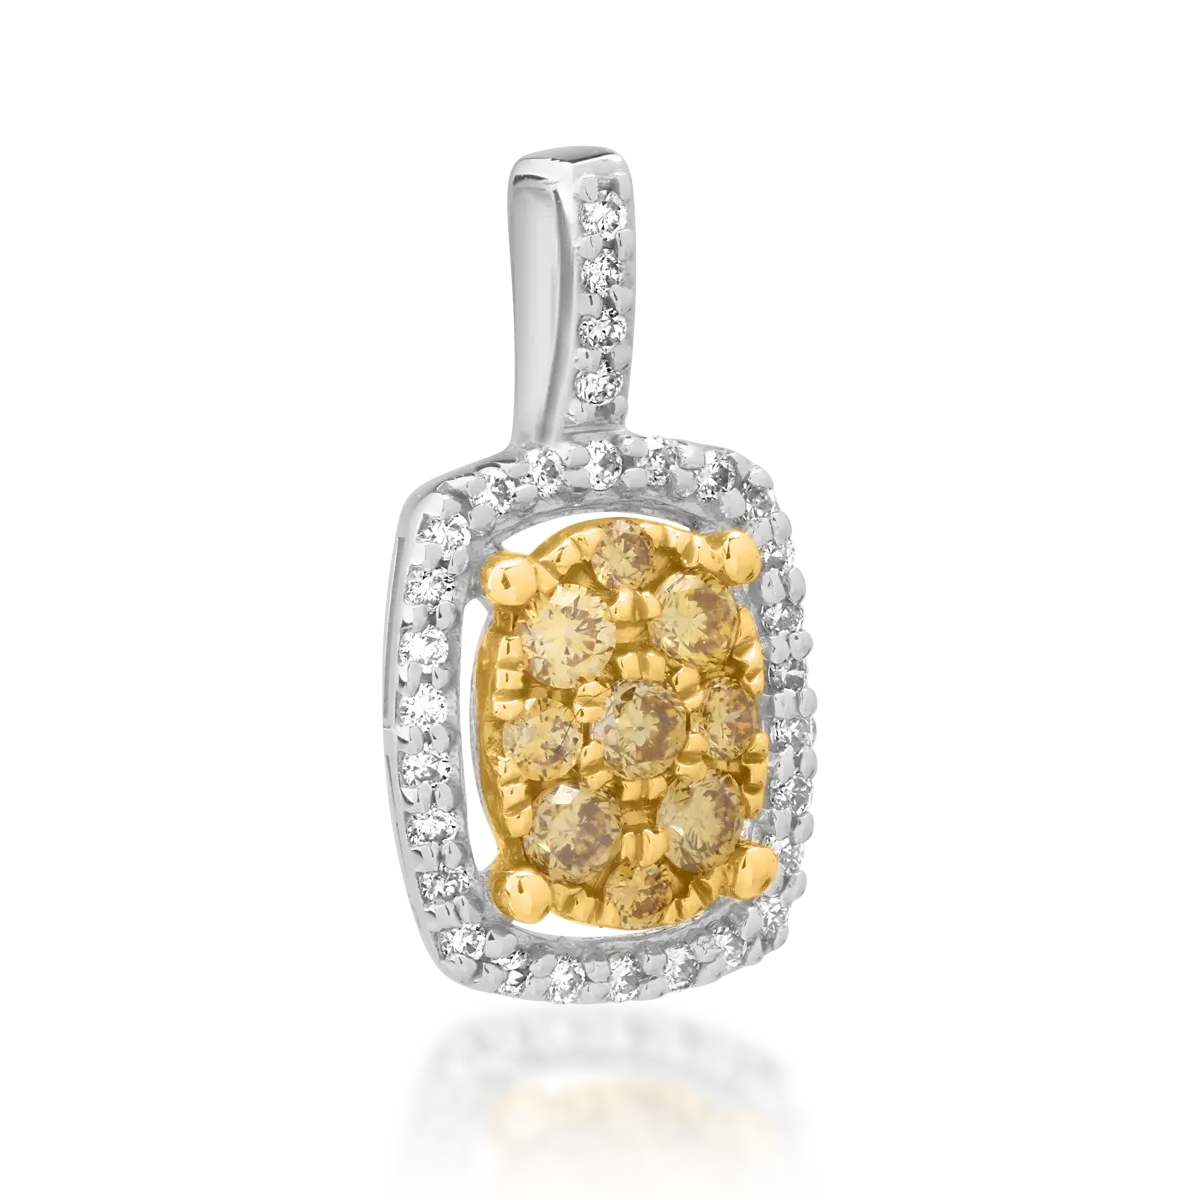 Medál 18K-os fehér aranyból 0.18ct sárga gyémánttal és 0.08ct átlátszó gyémánttal